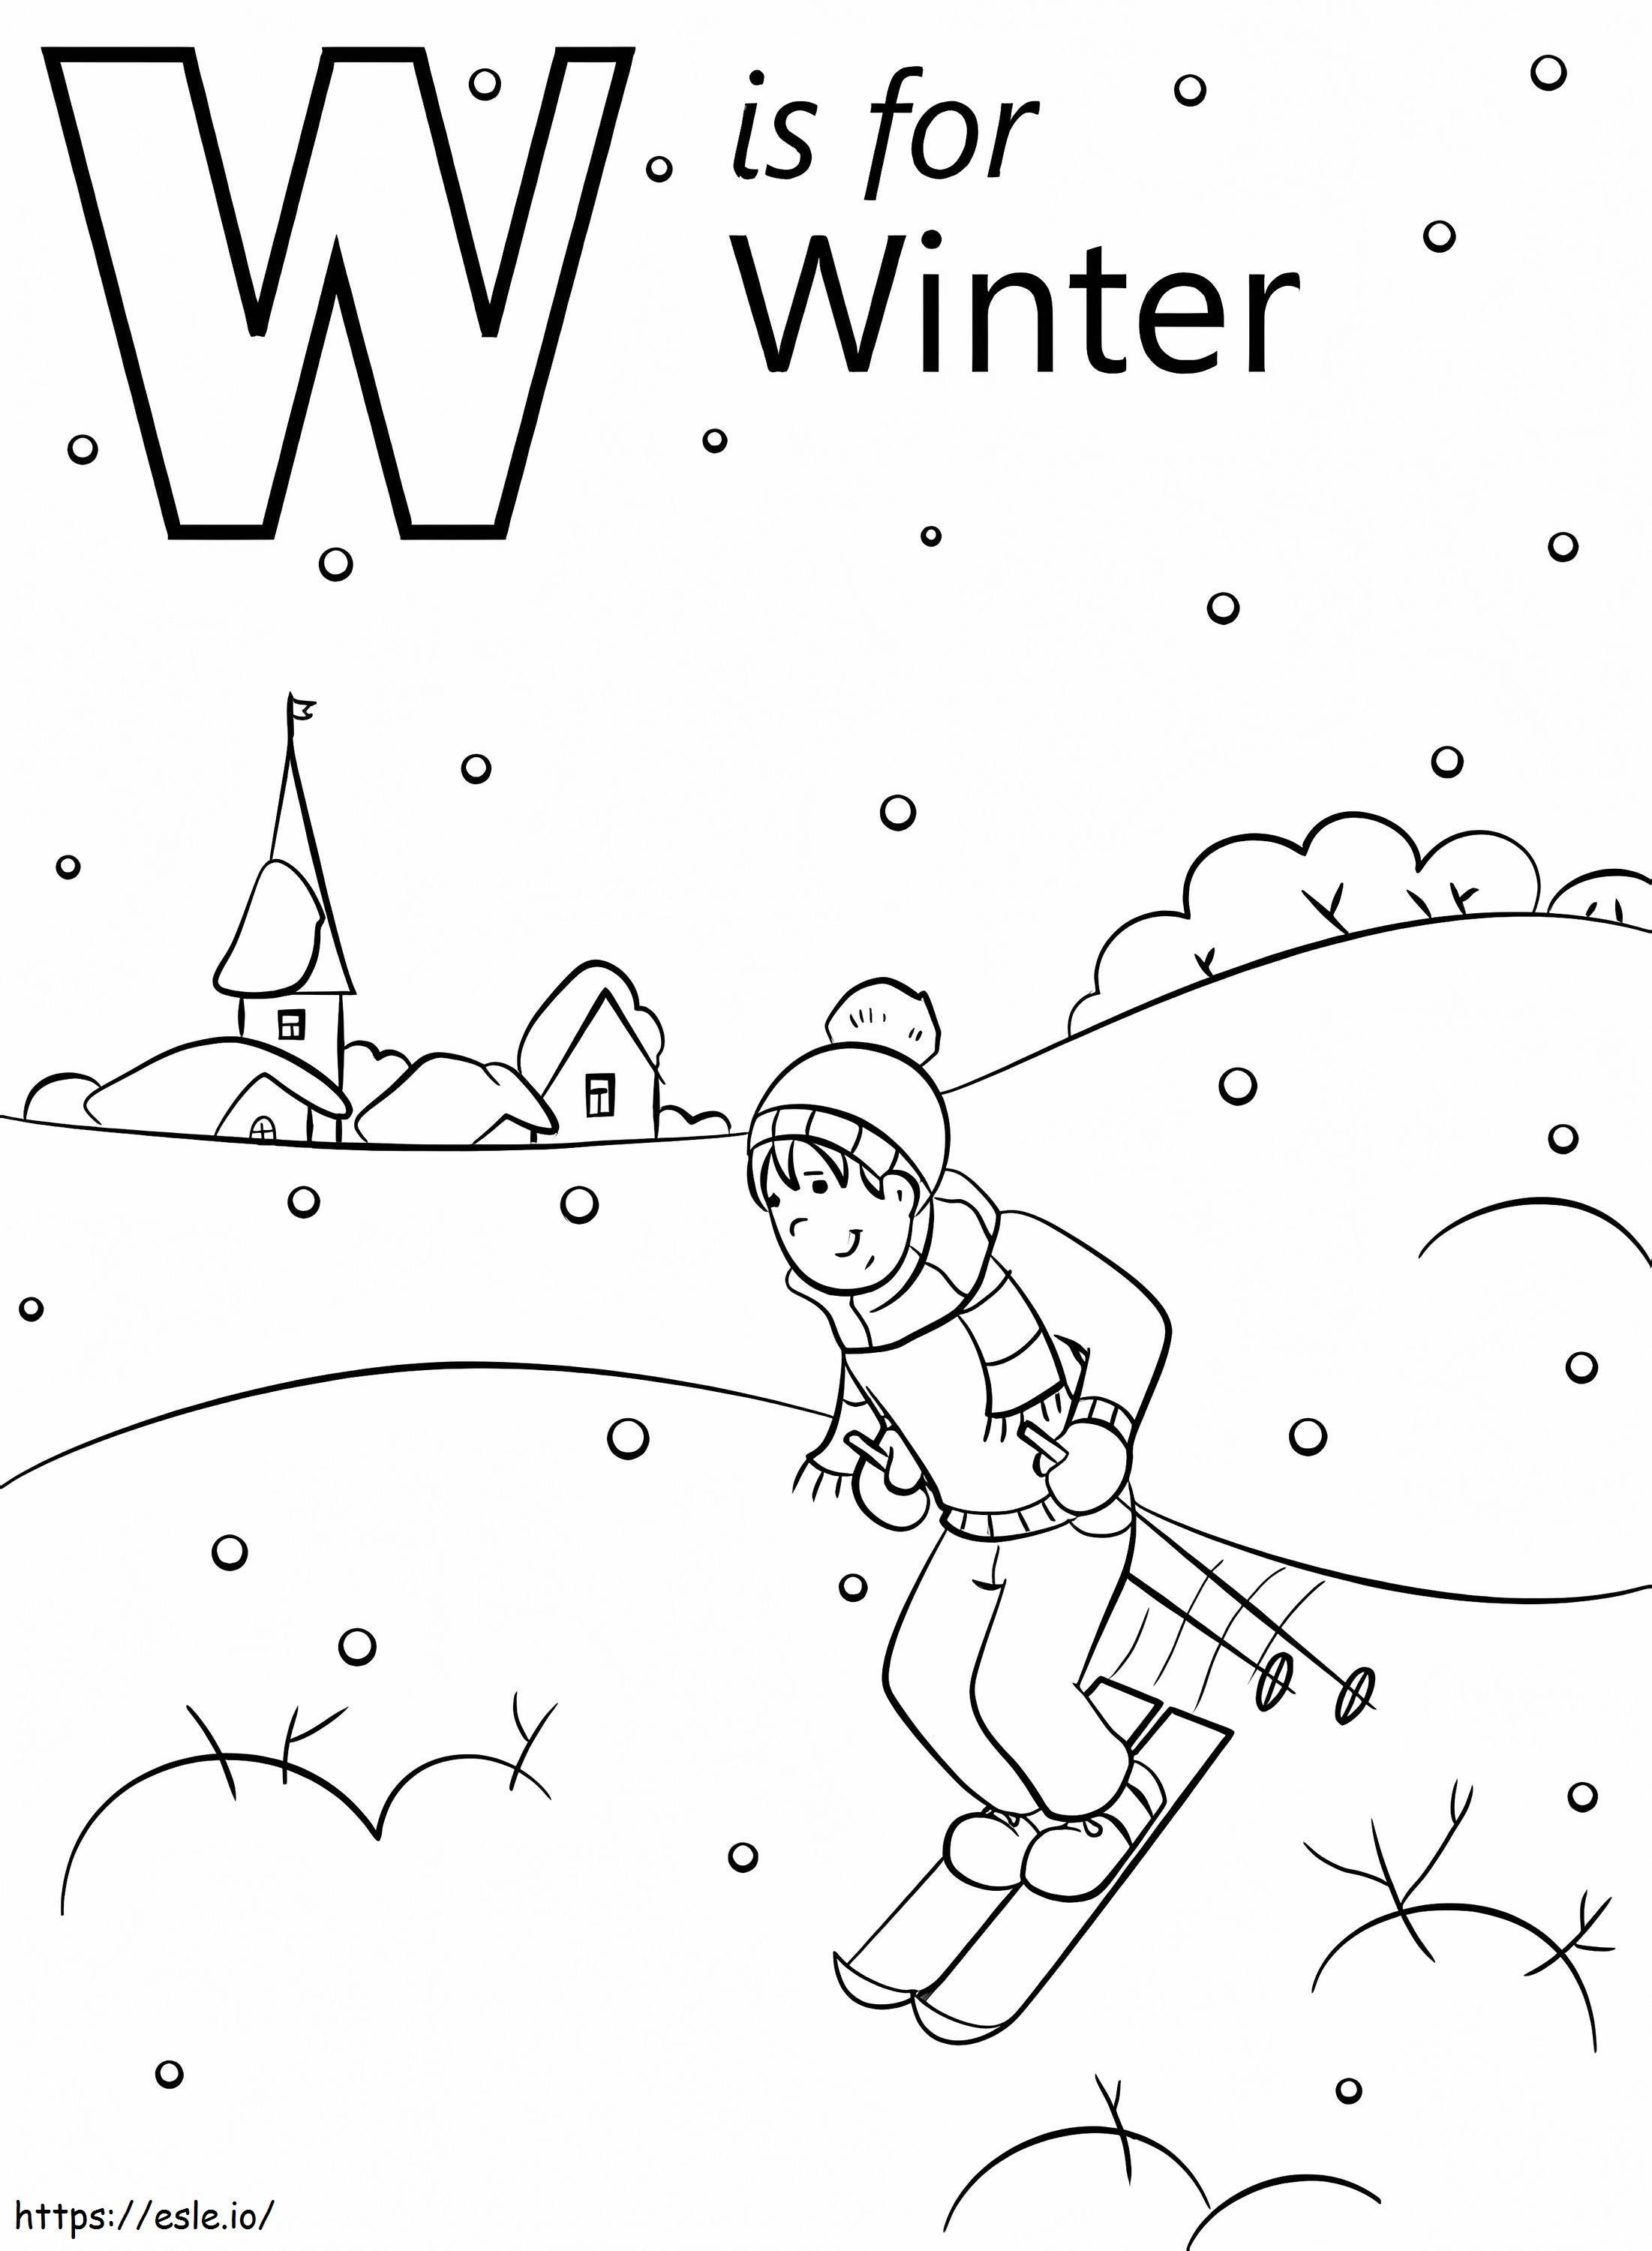 Letra de invierno W para colorear